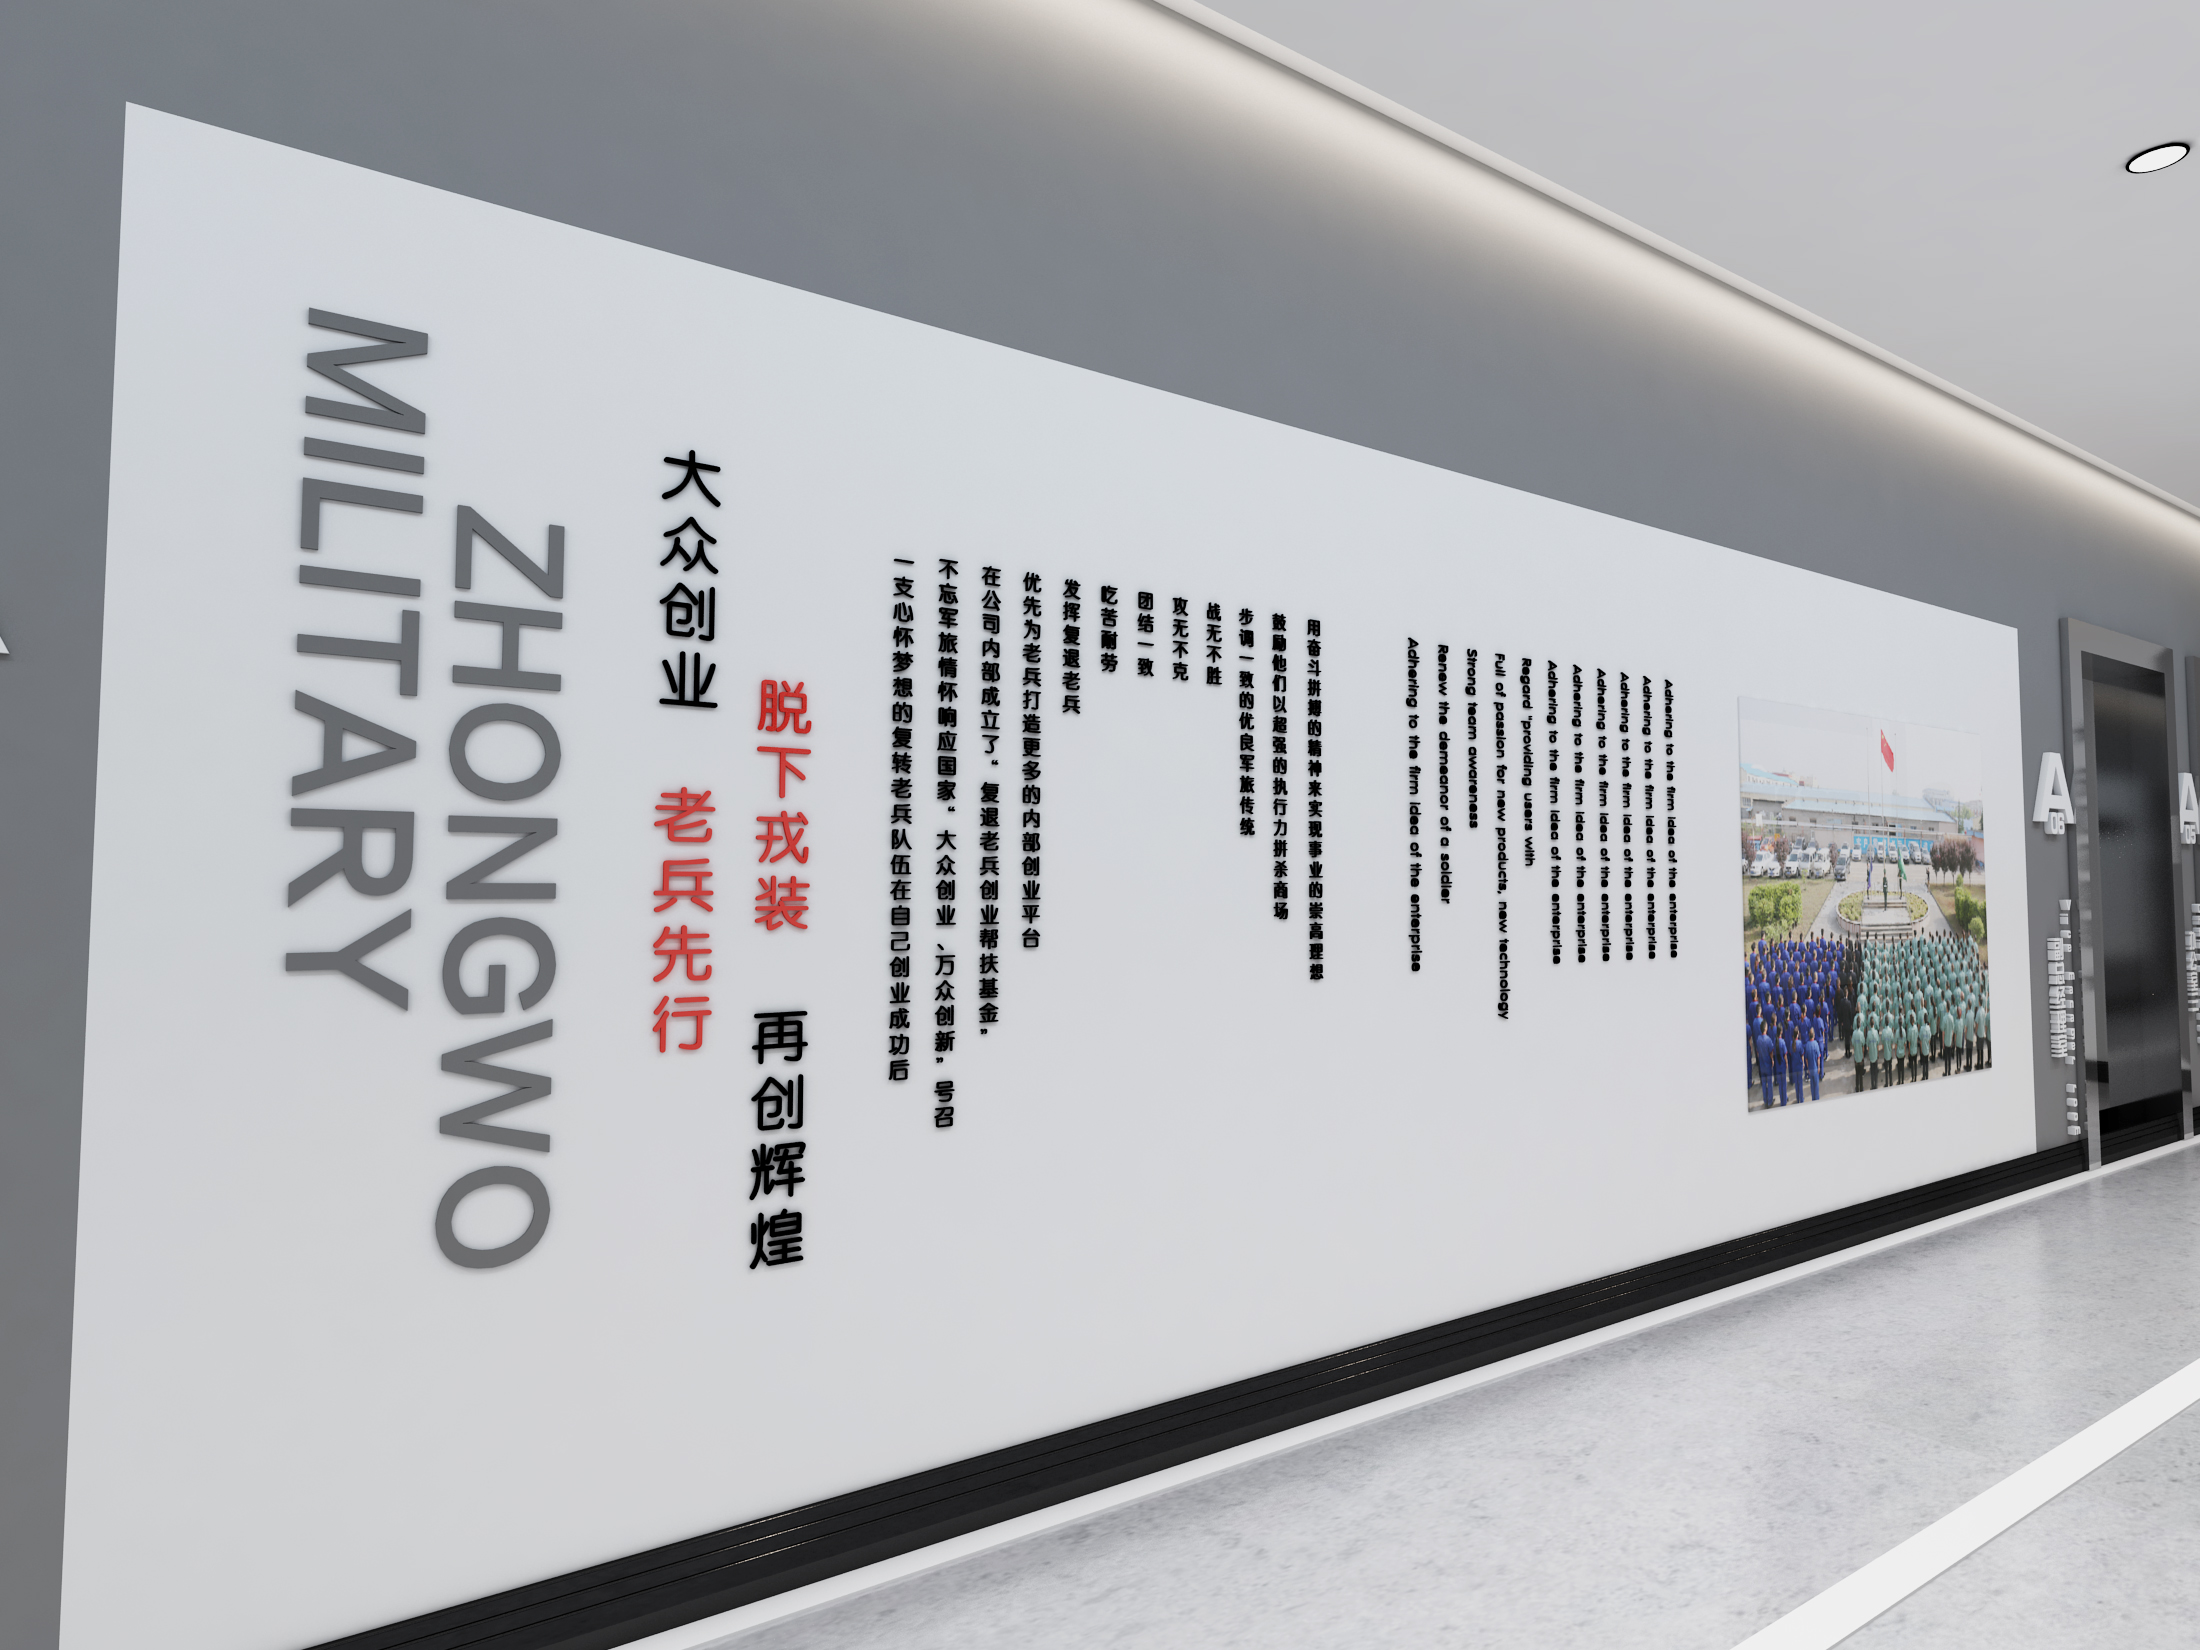 走廊文化墙:企业军旅文化展示